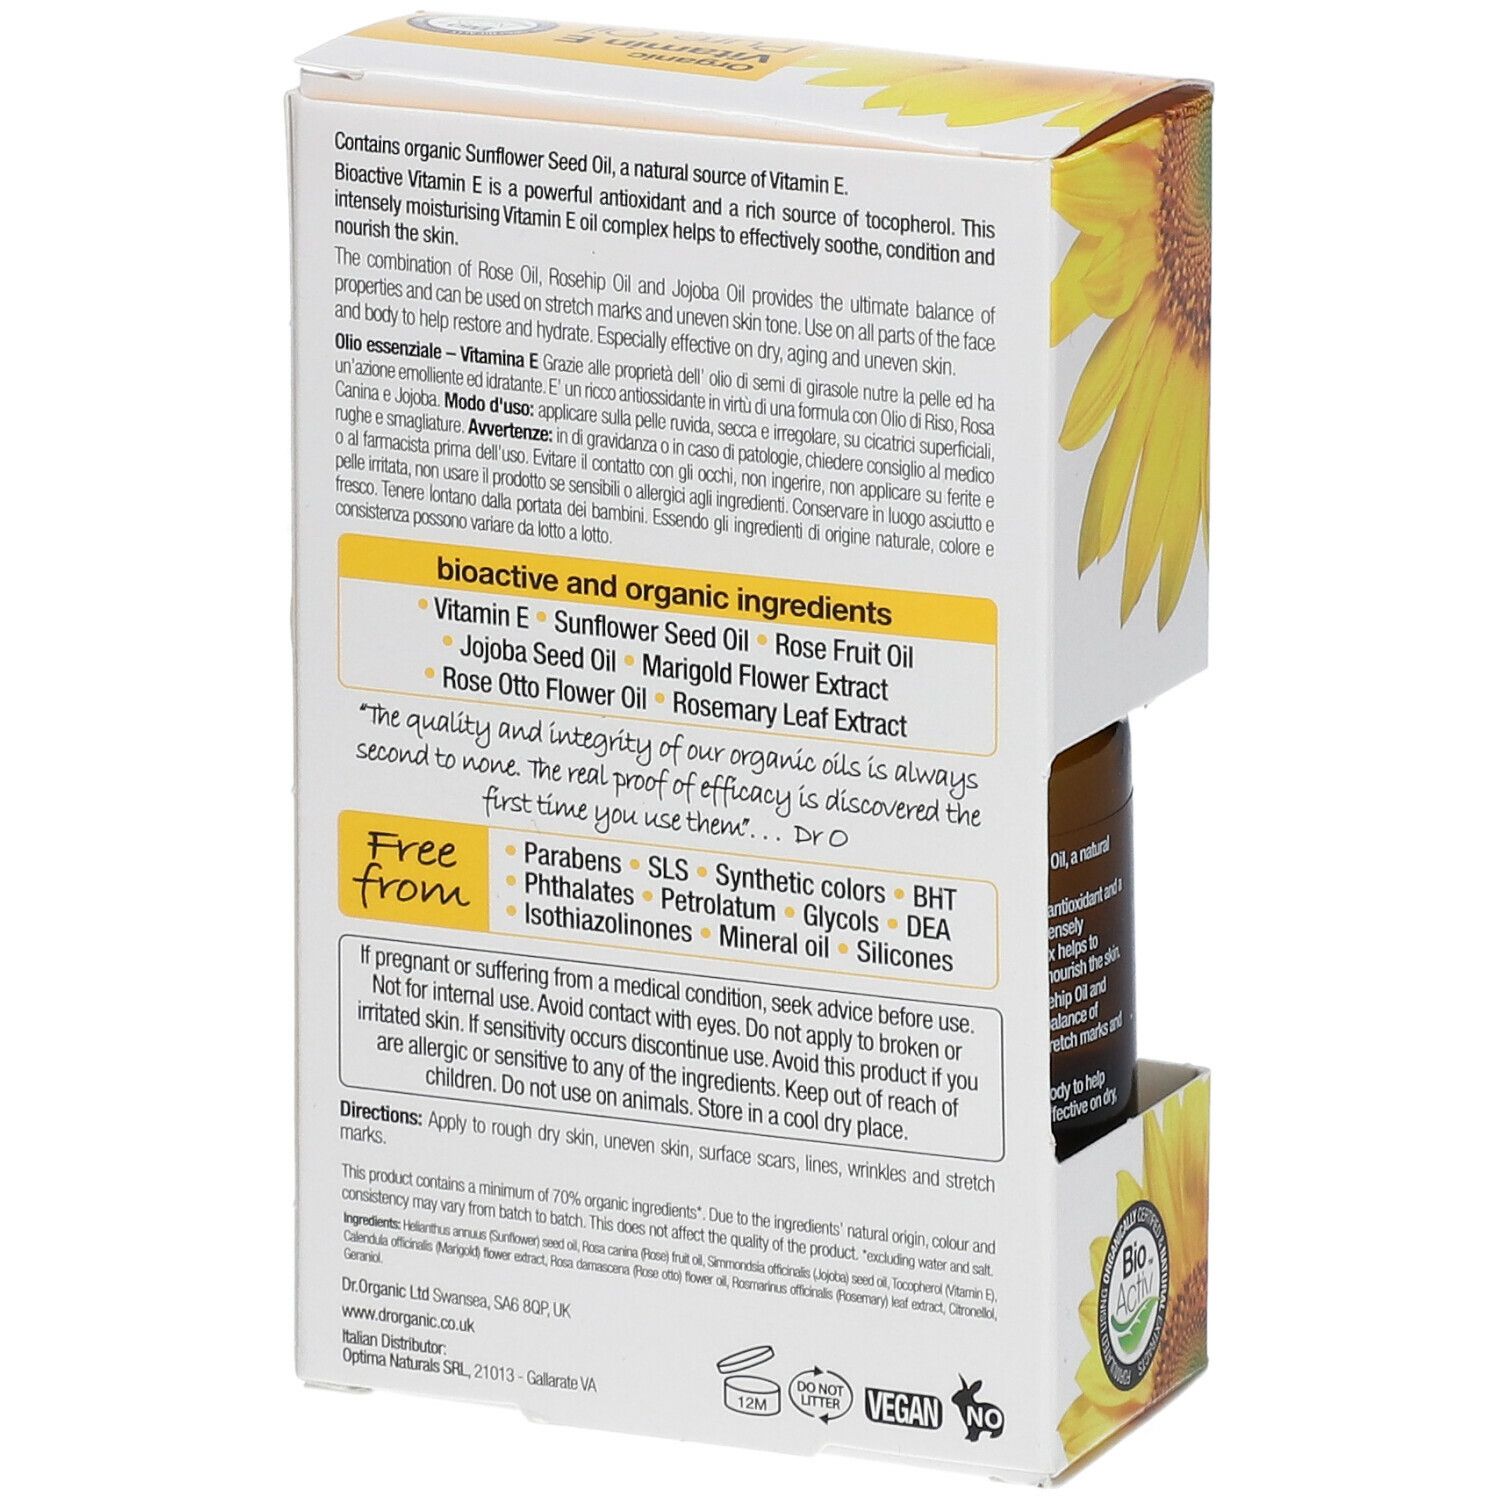 Dr. Organic® Vitamin E Pure Oil